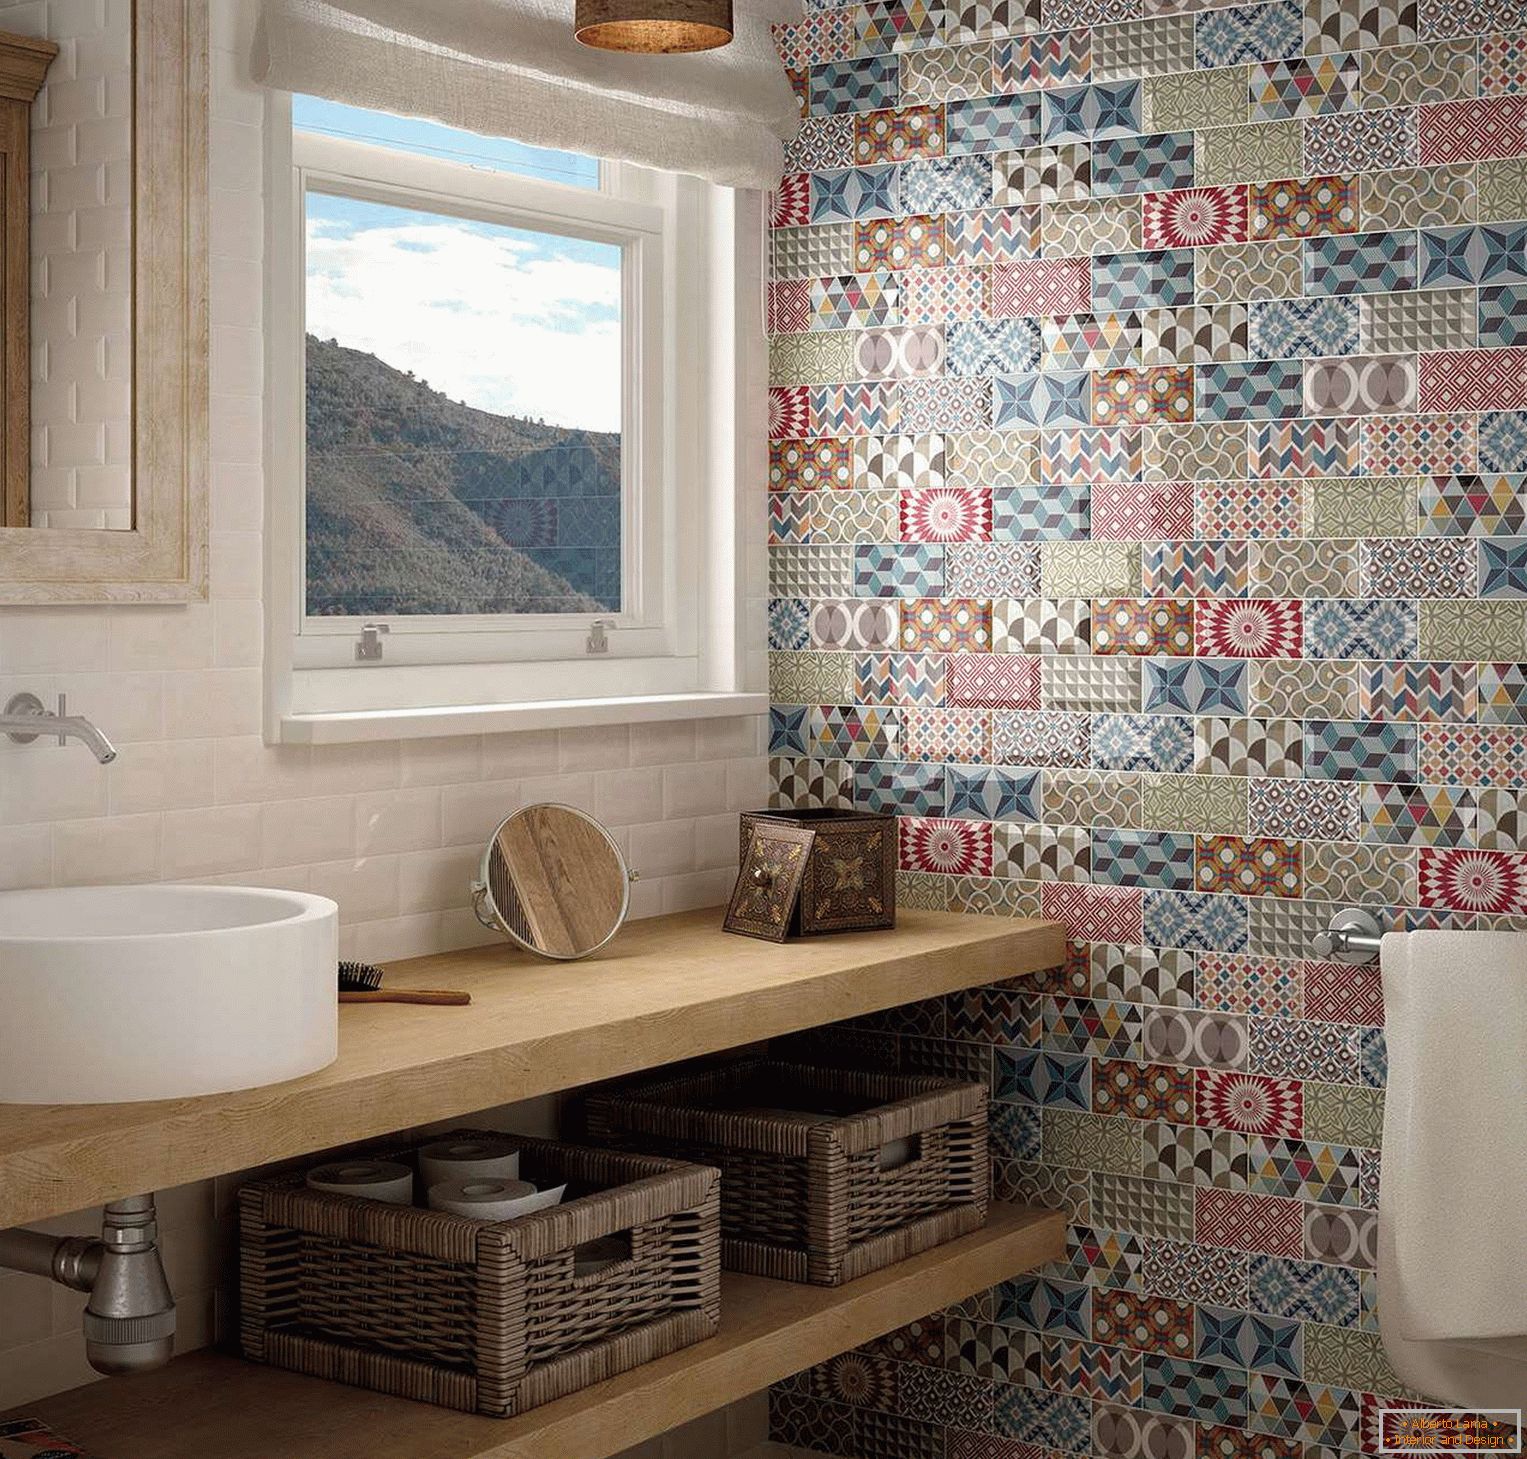 Kachlová patchwork v interiéru koupelny